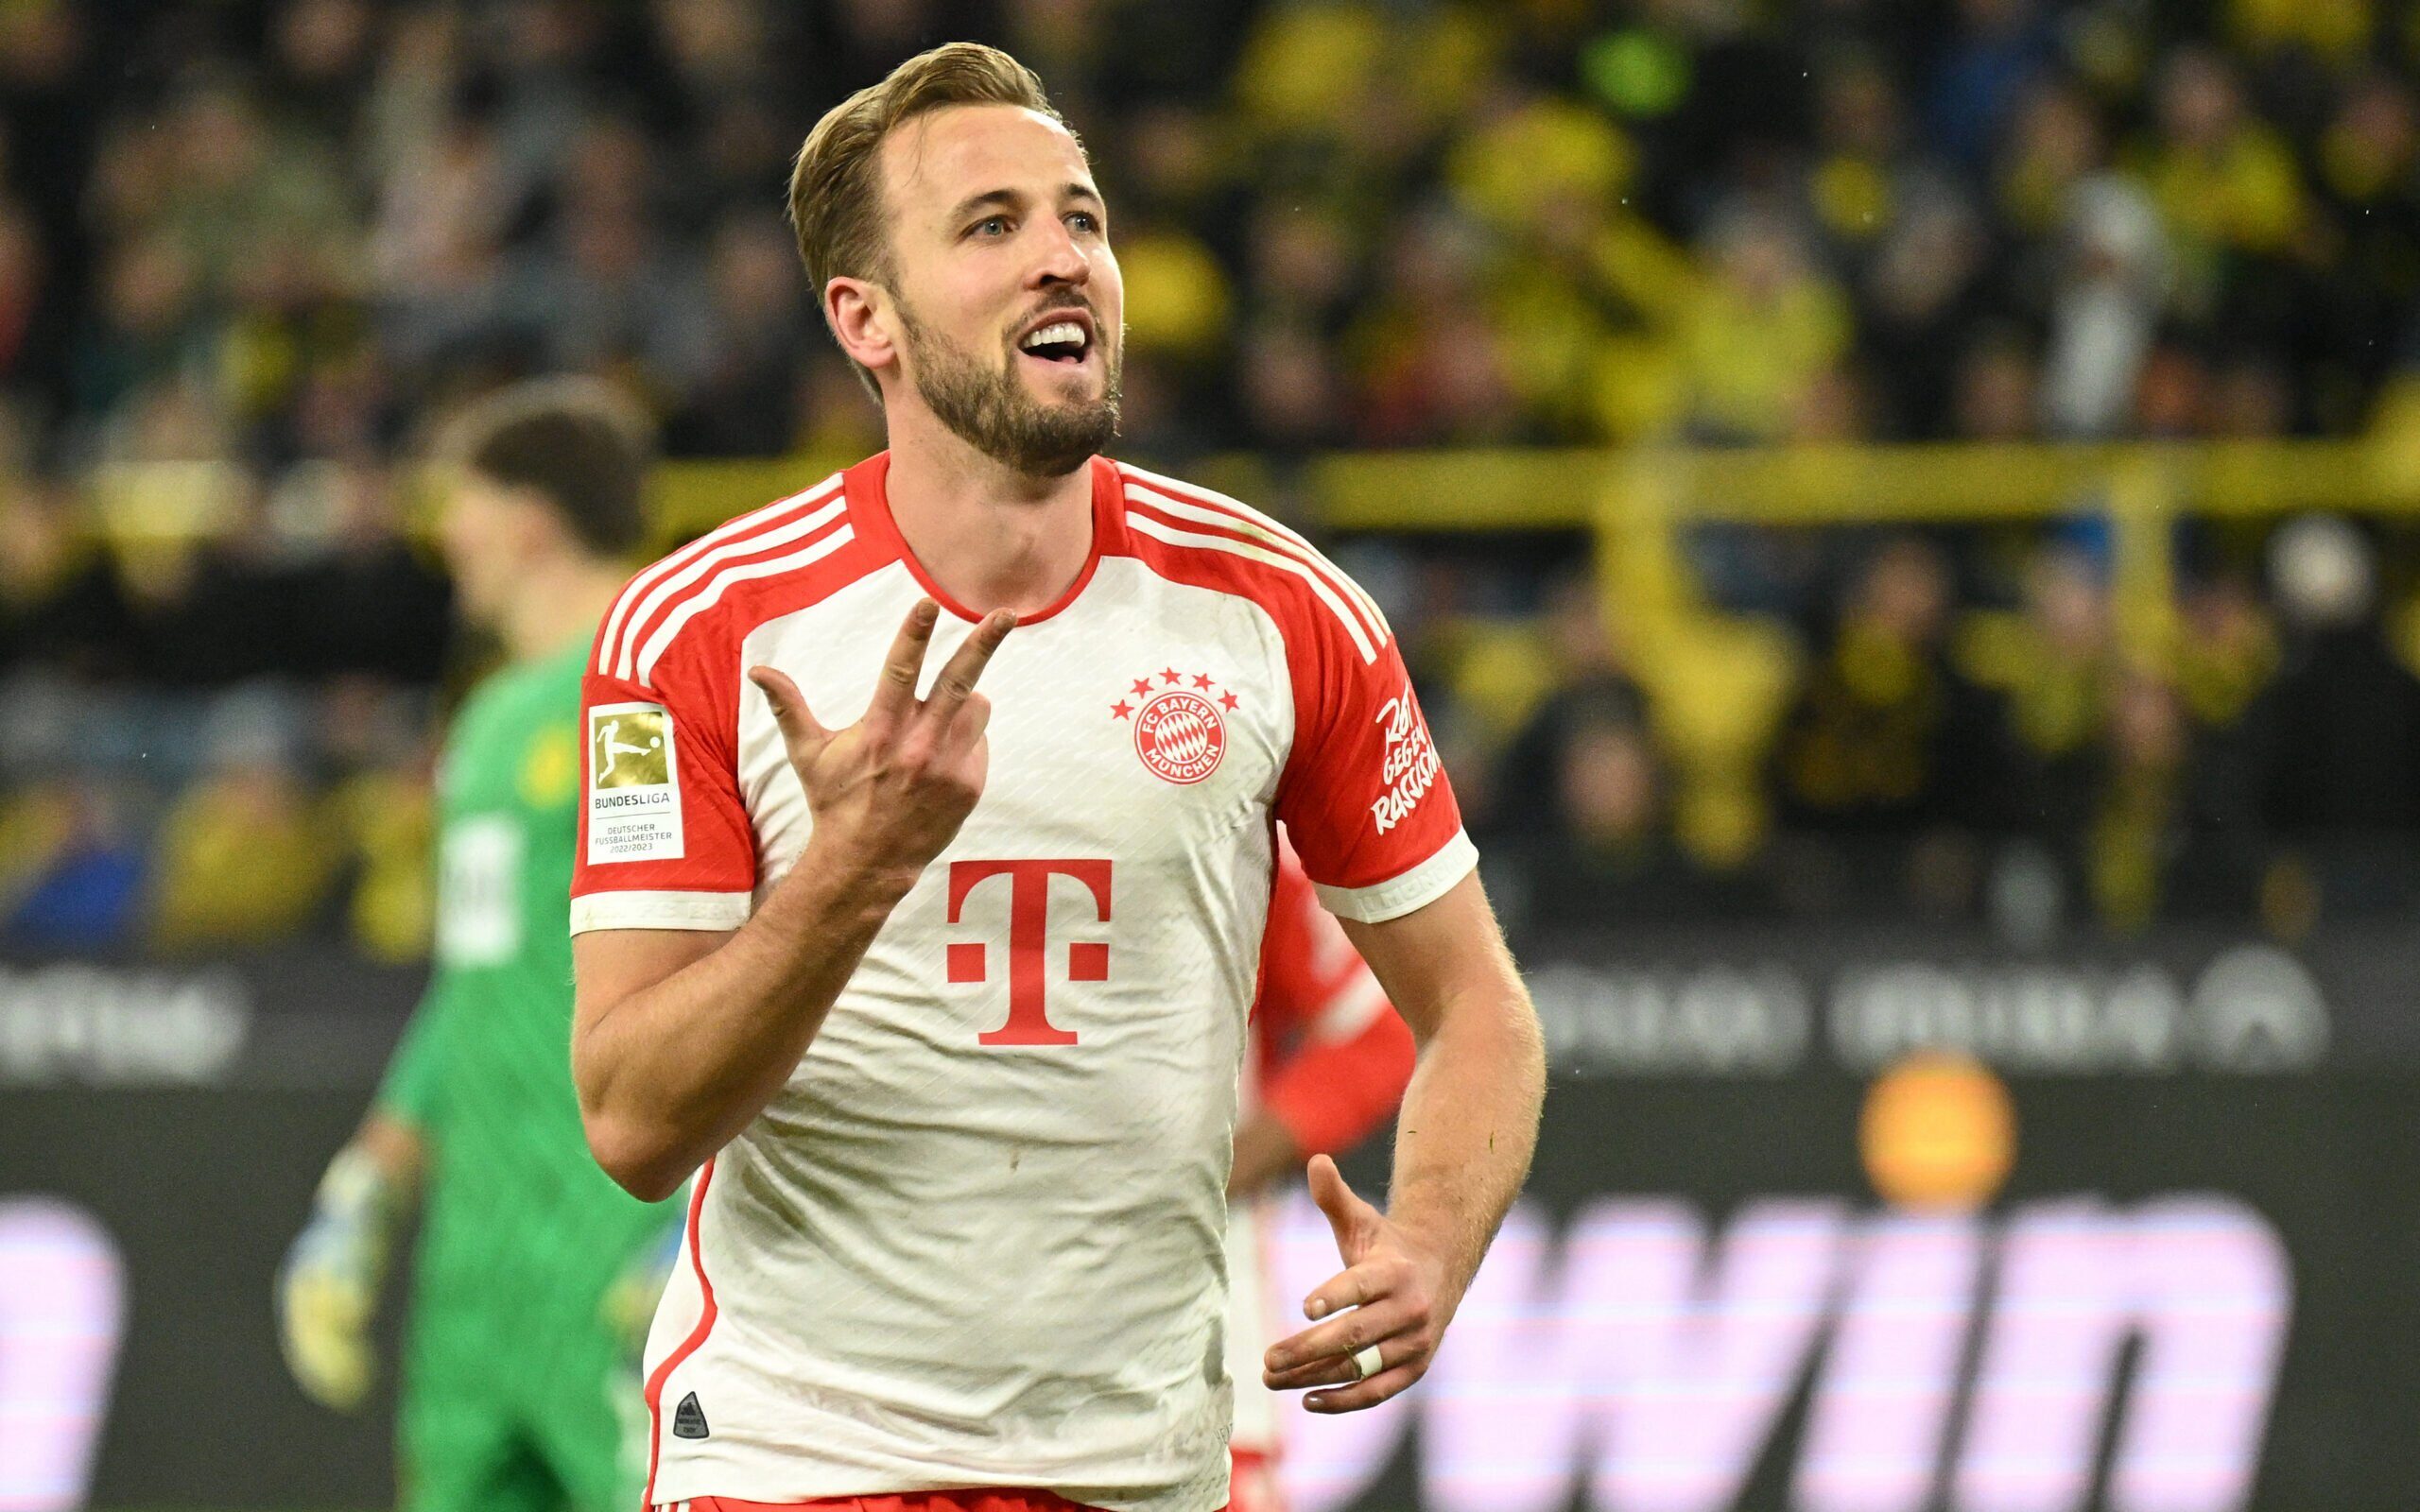 Liga alemã confirma horários de todas as jornadas da Bundesliga